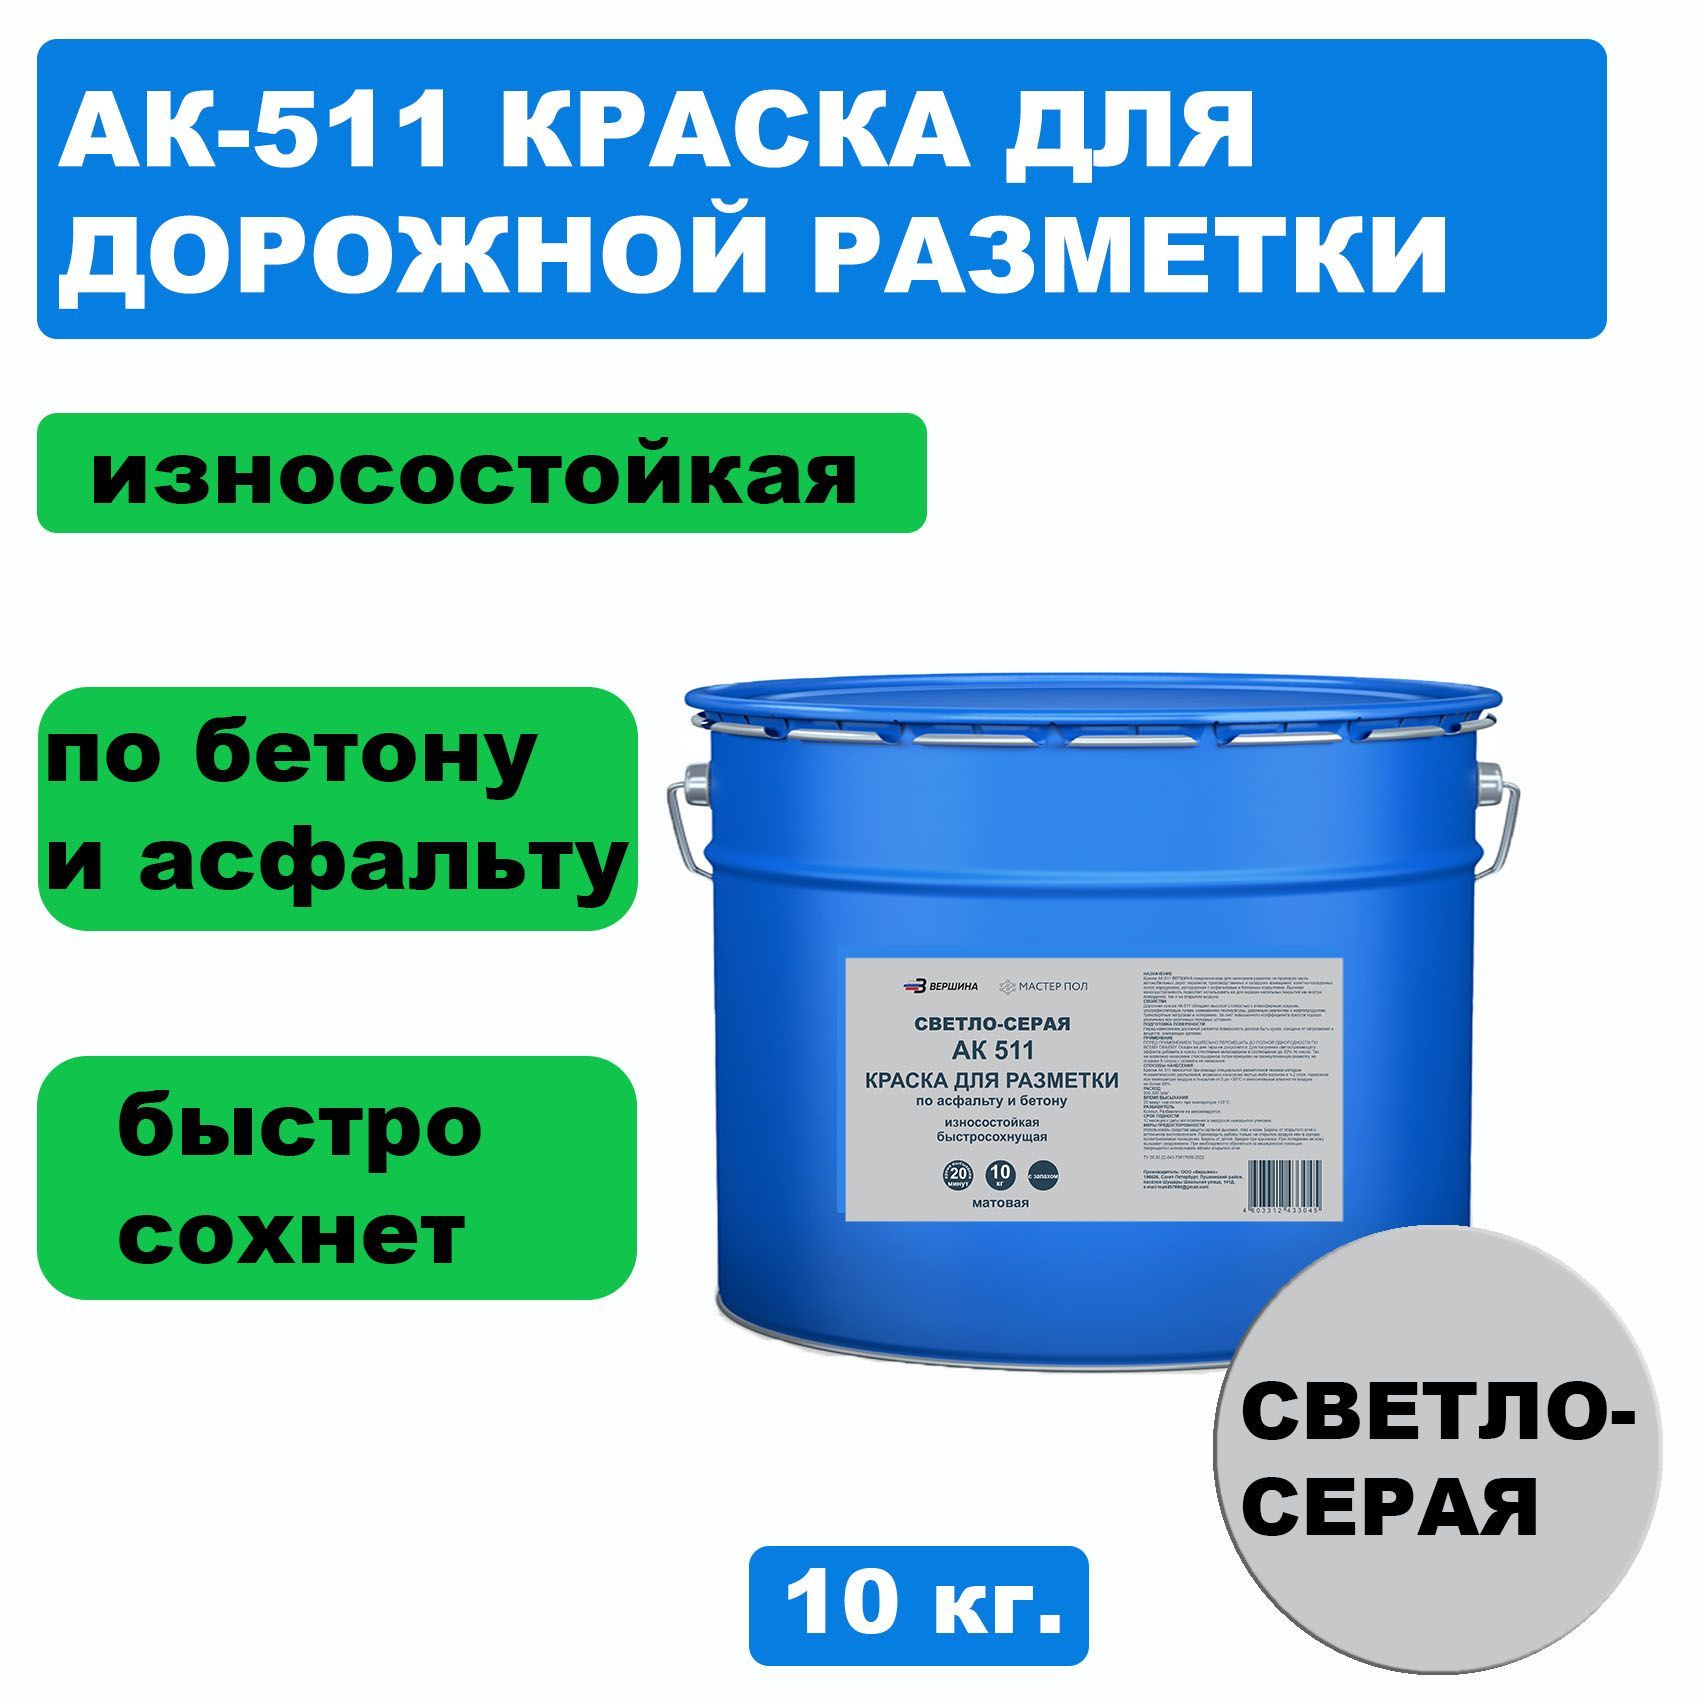 Дорожная краска ВЕРШИНА АК-511 для разметки по асфальту, износостойкая, светло-серая 10 кг